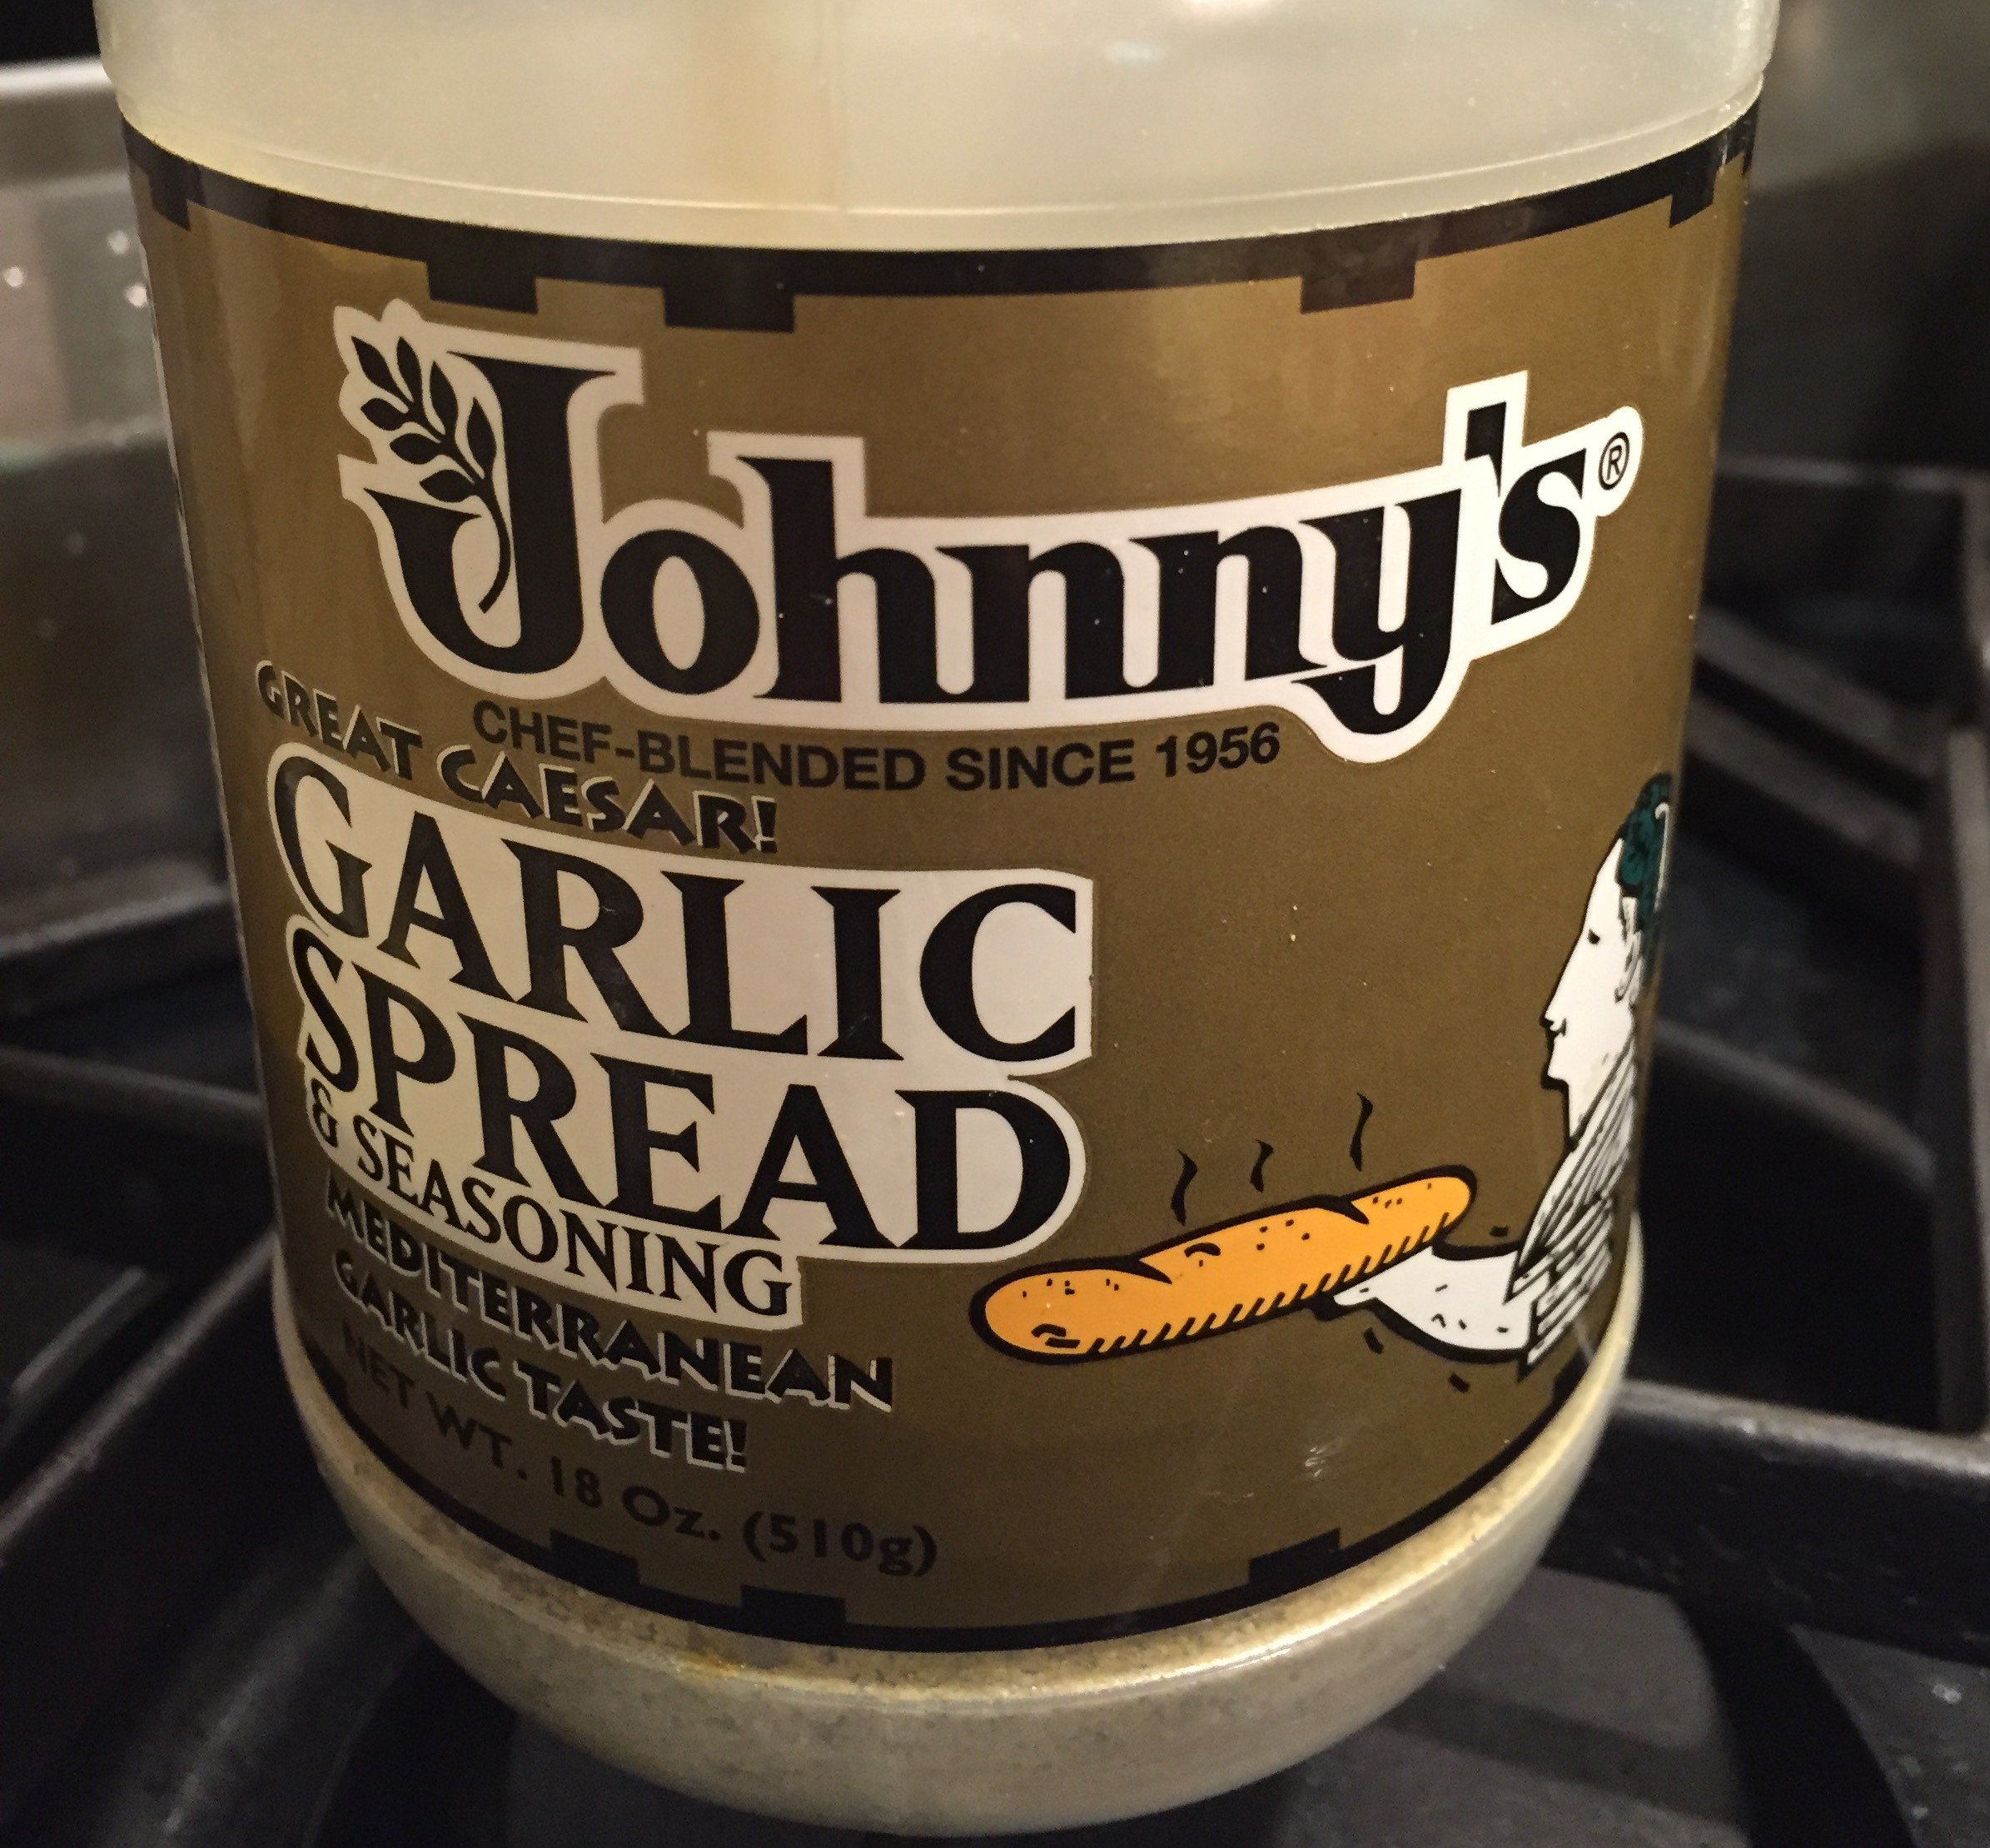 Johnny's garlic seasoning